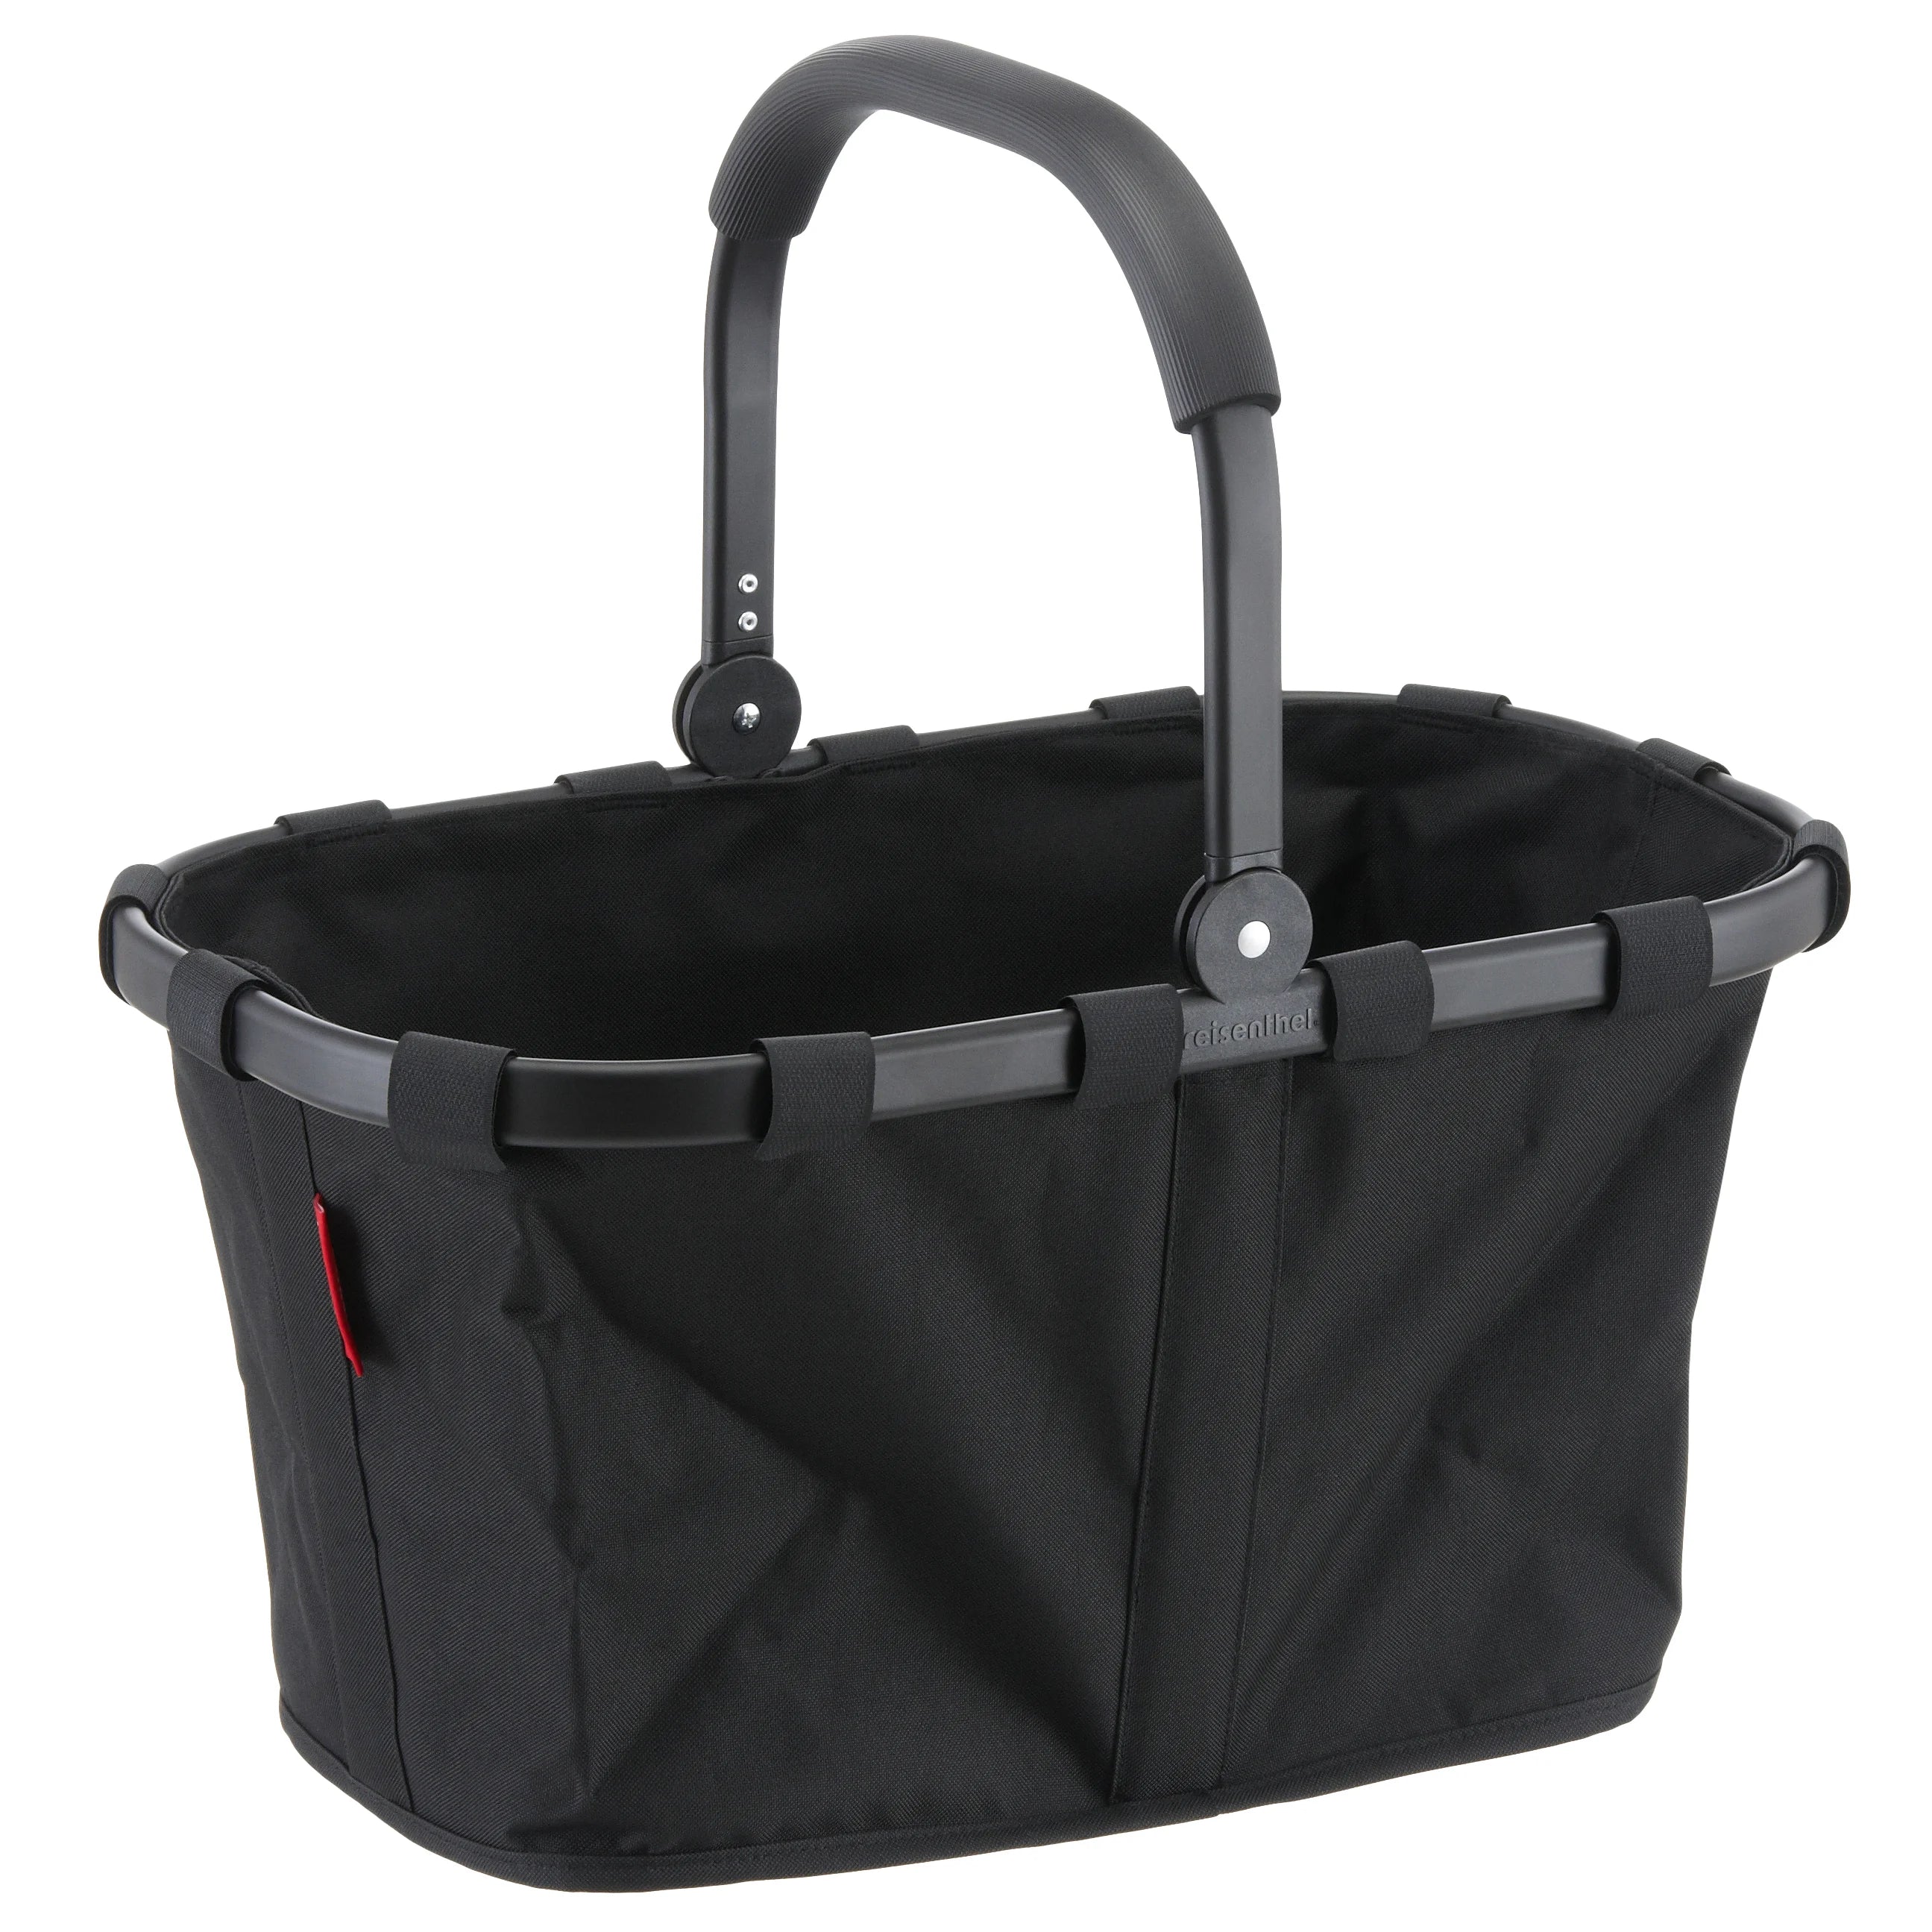 Reisenthel Shopping Carrybag Frame Einkaufkorb 48 cm - black/black